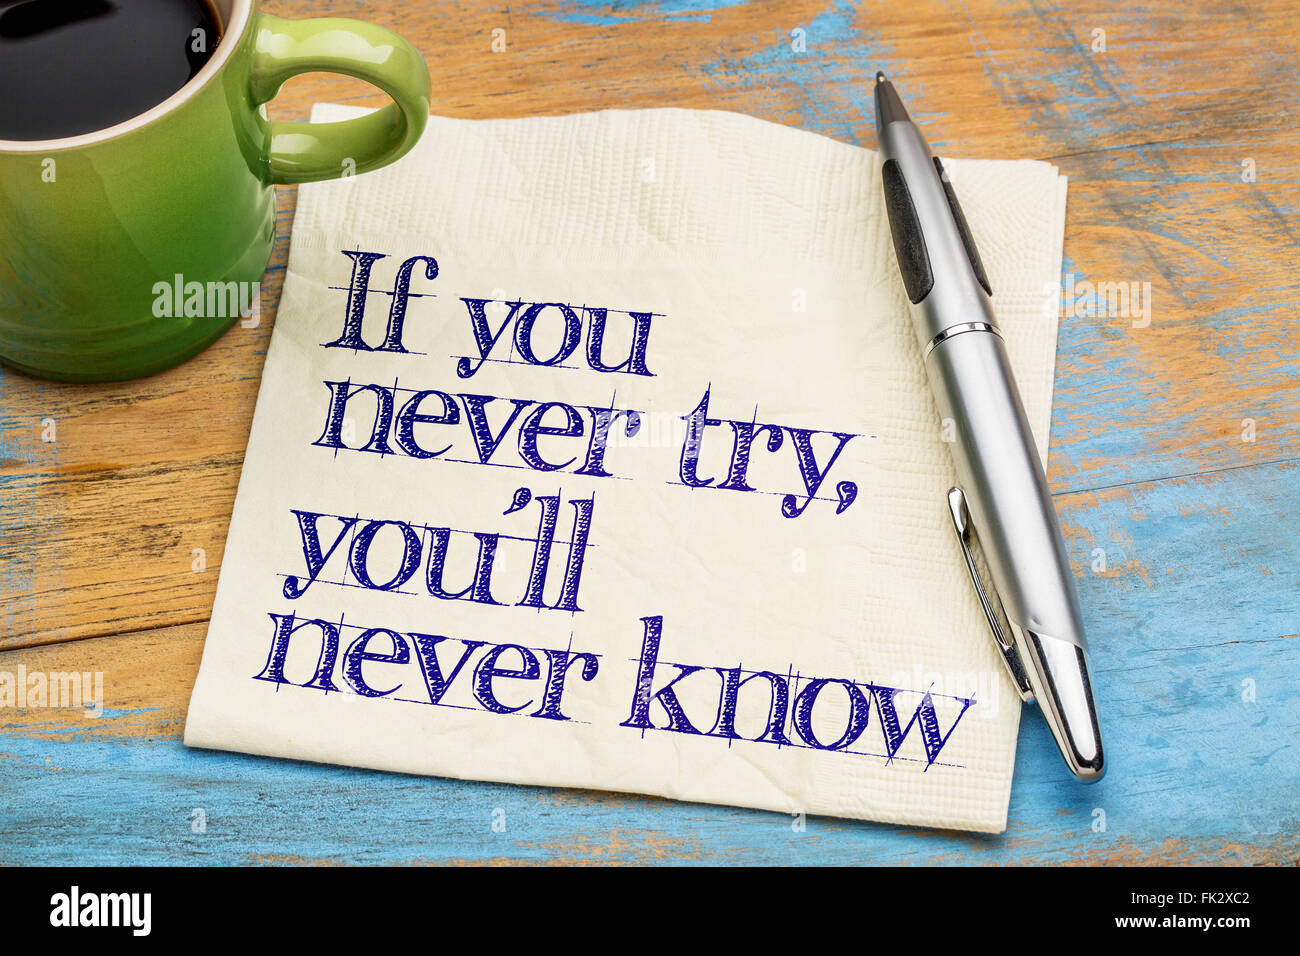 Si vous n'essayez jamais, vous ne saurez jamais. - Écriture de motivation sur une serviette avec une tasse de café Banque D'Images